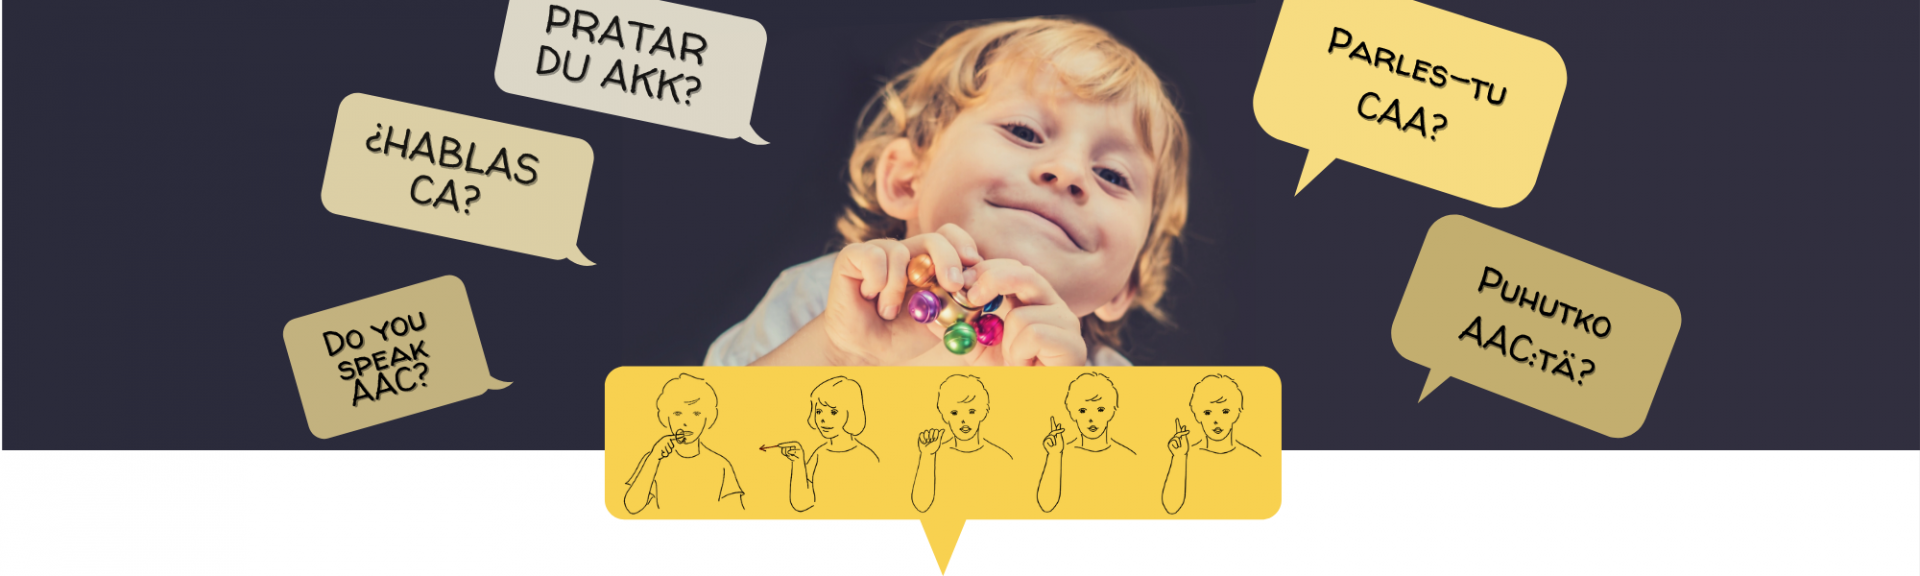 Bild som visar ett glatt barn samt pratbubblor som visar Pratar du AKK? på olika språk